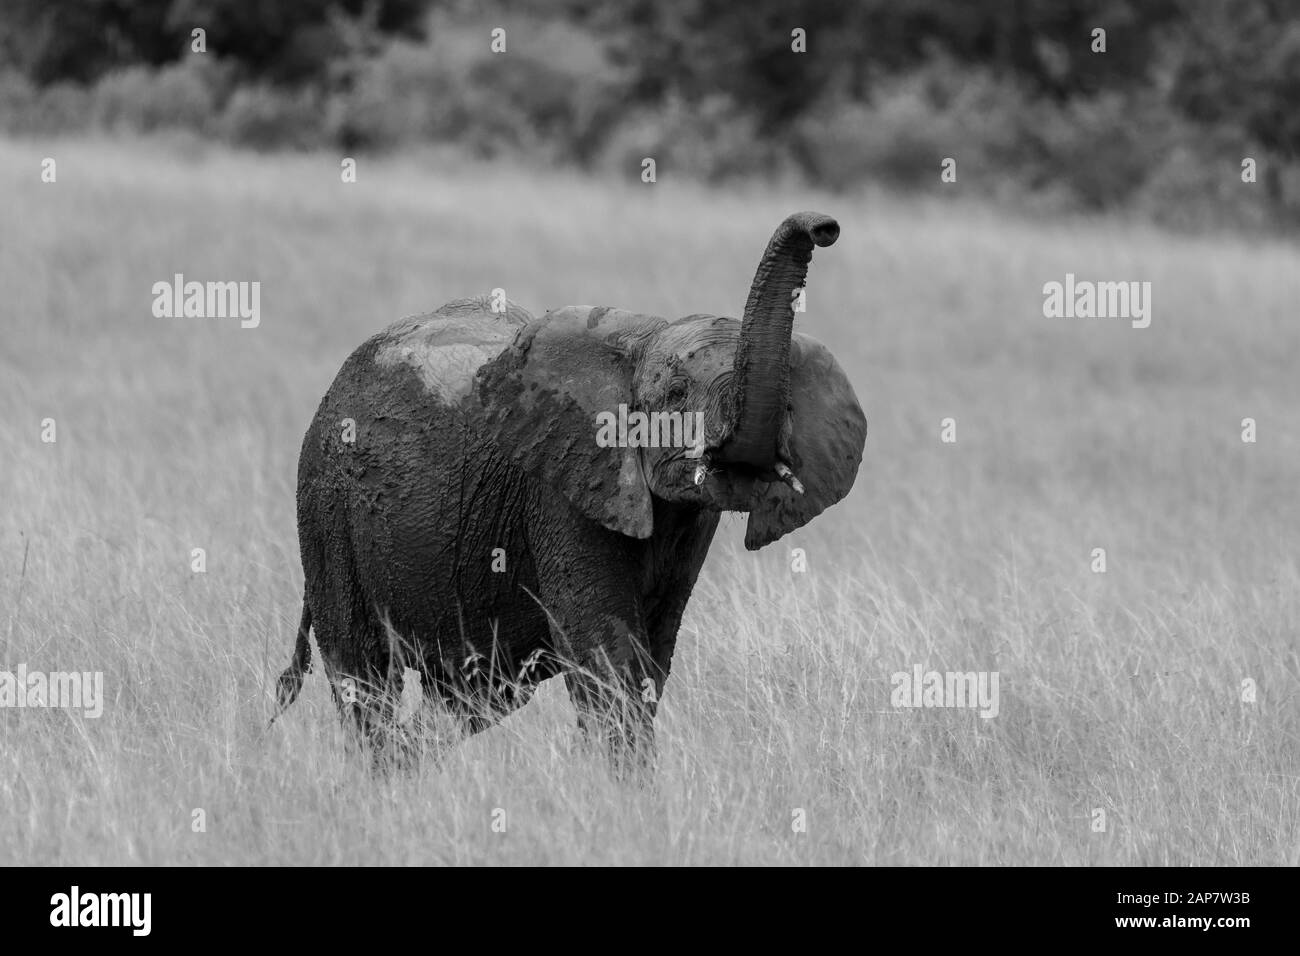 Eine Herde afrikanischer Elefanten, die während einer Wildtier-Safari in den Ebenen Afrikas im Masai Mara National Reserve grasen Stockfoto